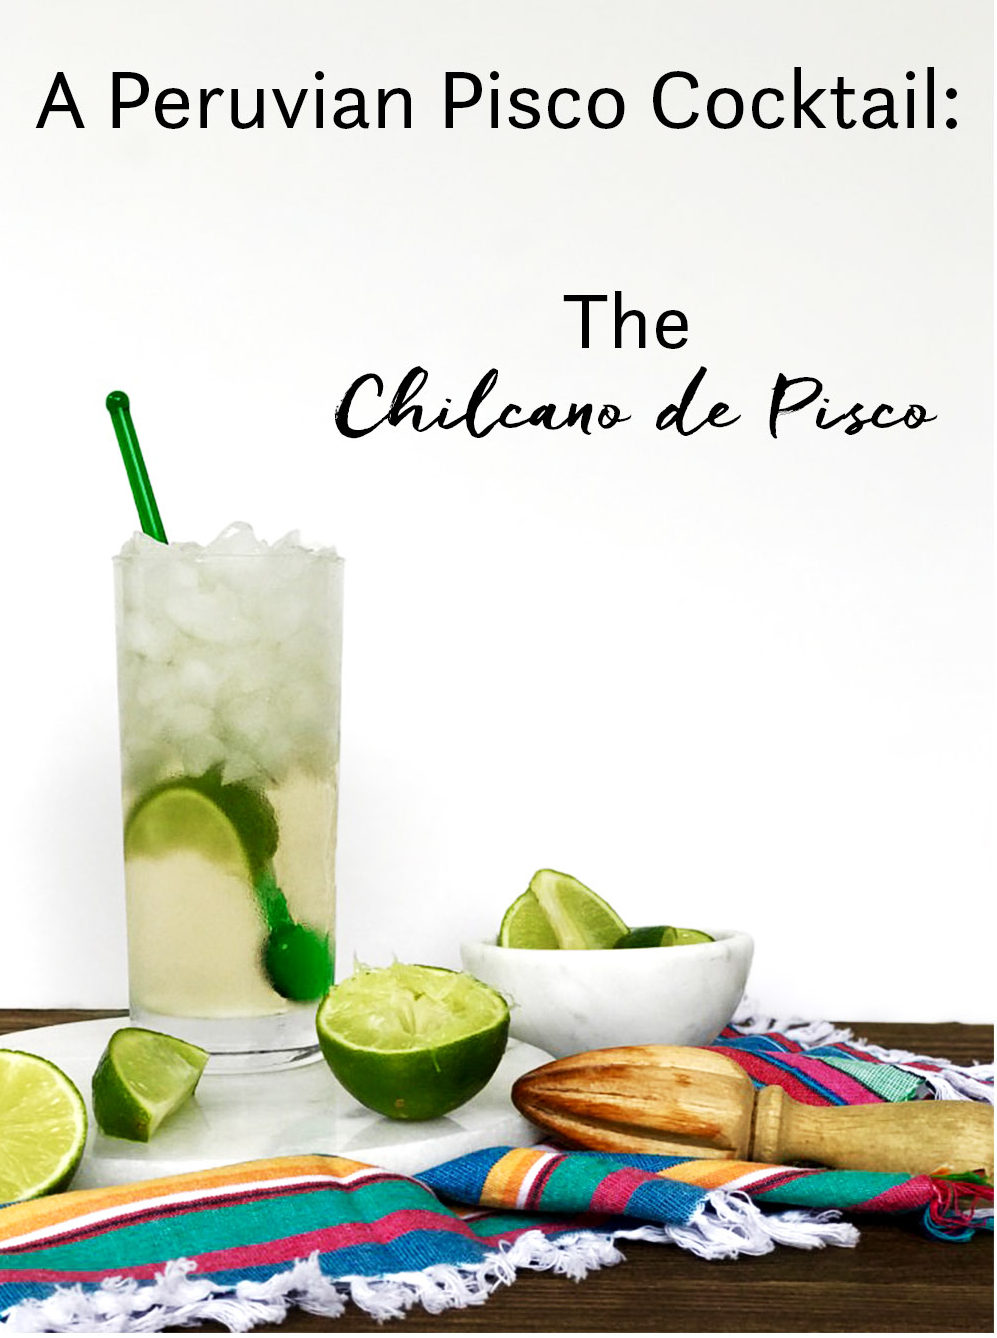 My Favorite Pisco Cocktail: Chilcano de Pisco